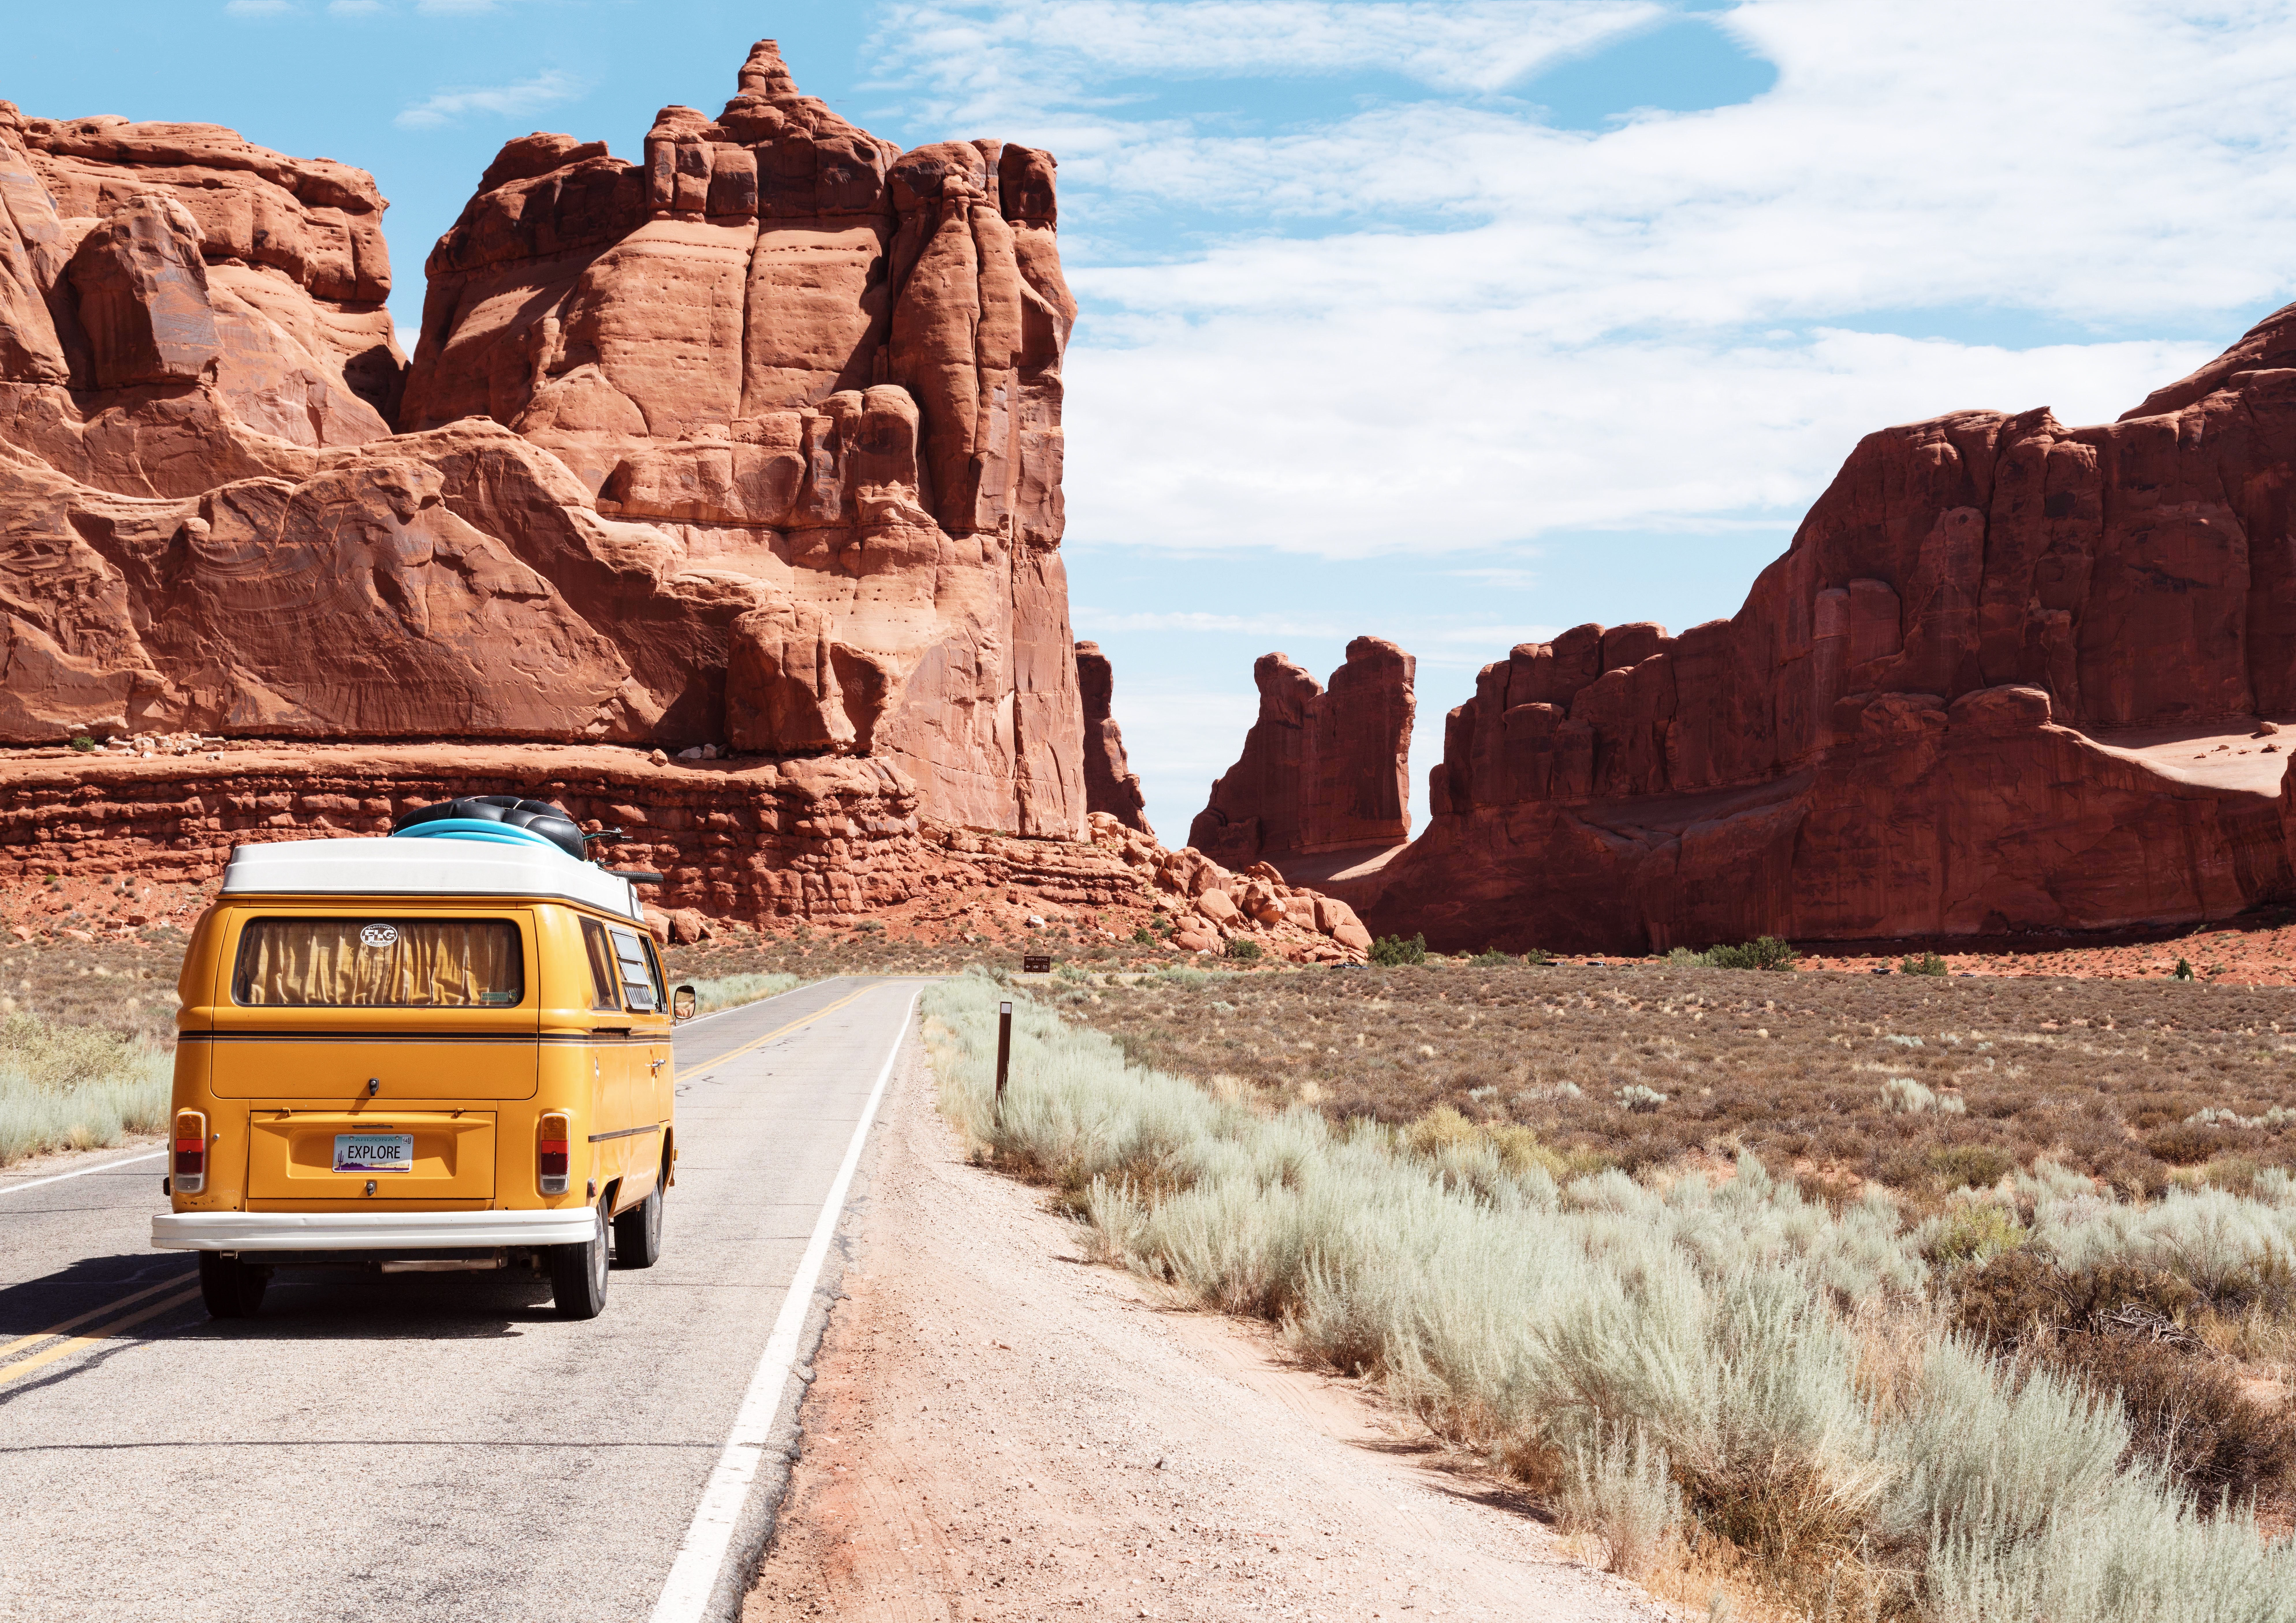 A yellow roadtrip van in a dry rocky landscape